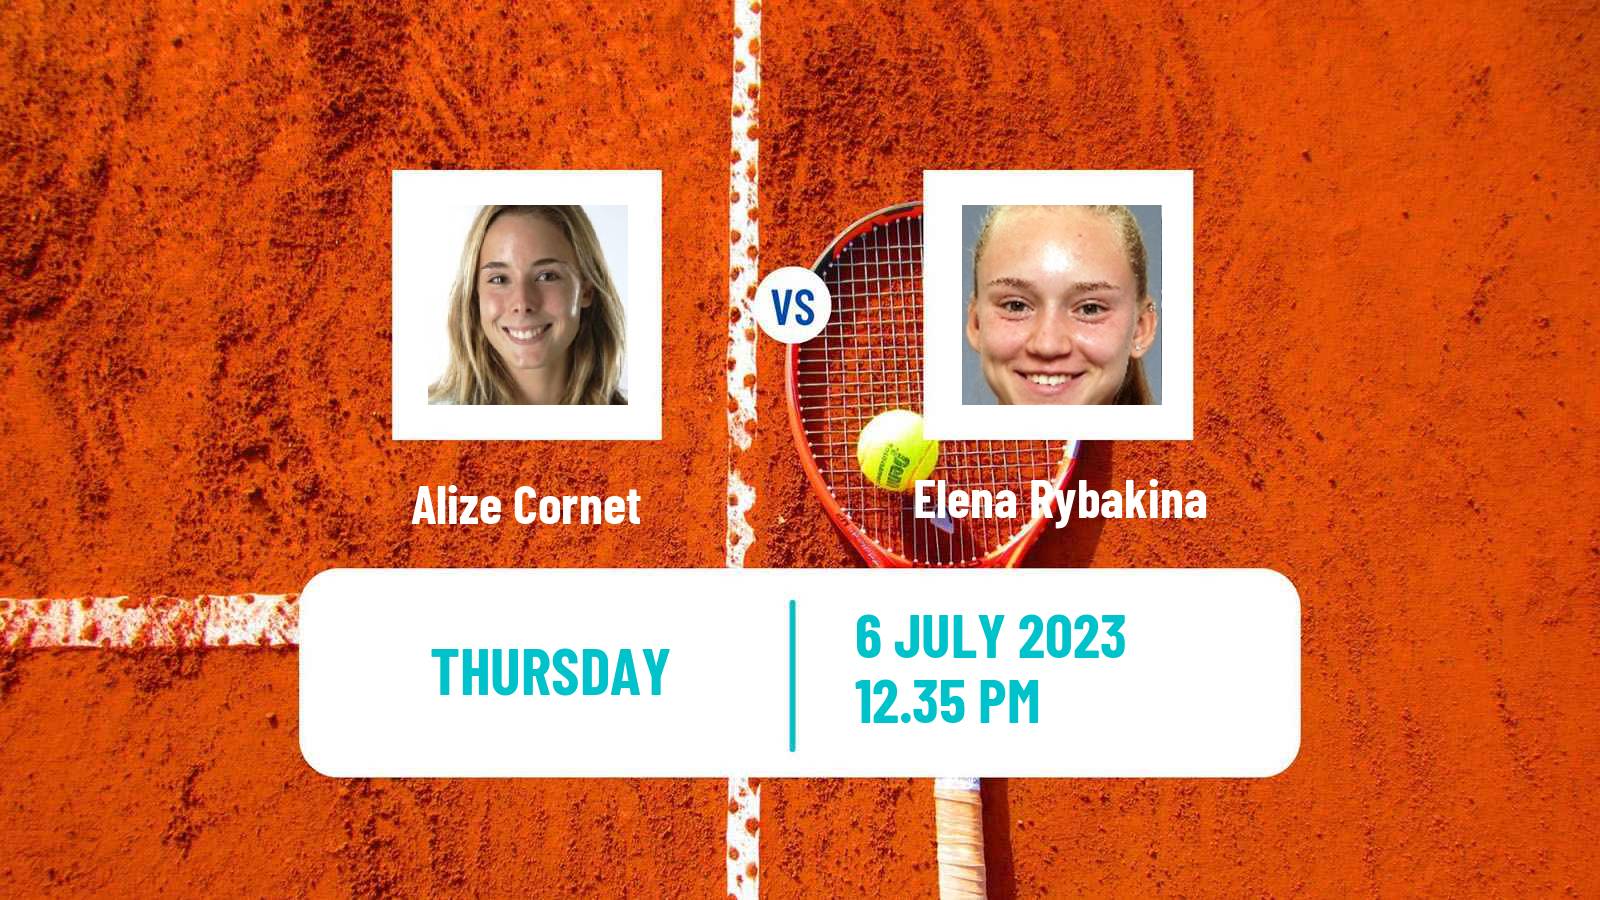 Tennis WTA Wimbledon Alize Cornet - Elena Rybakina